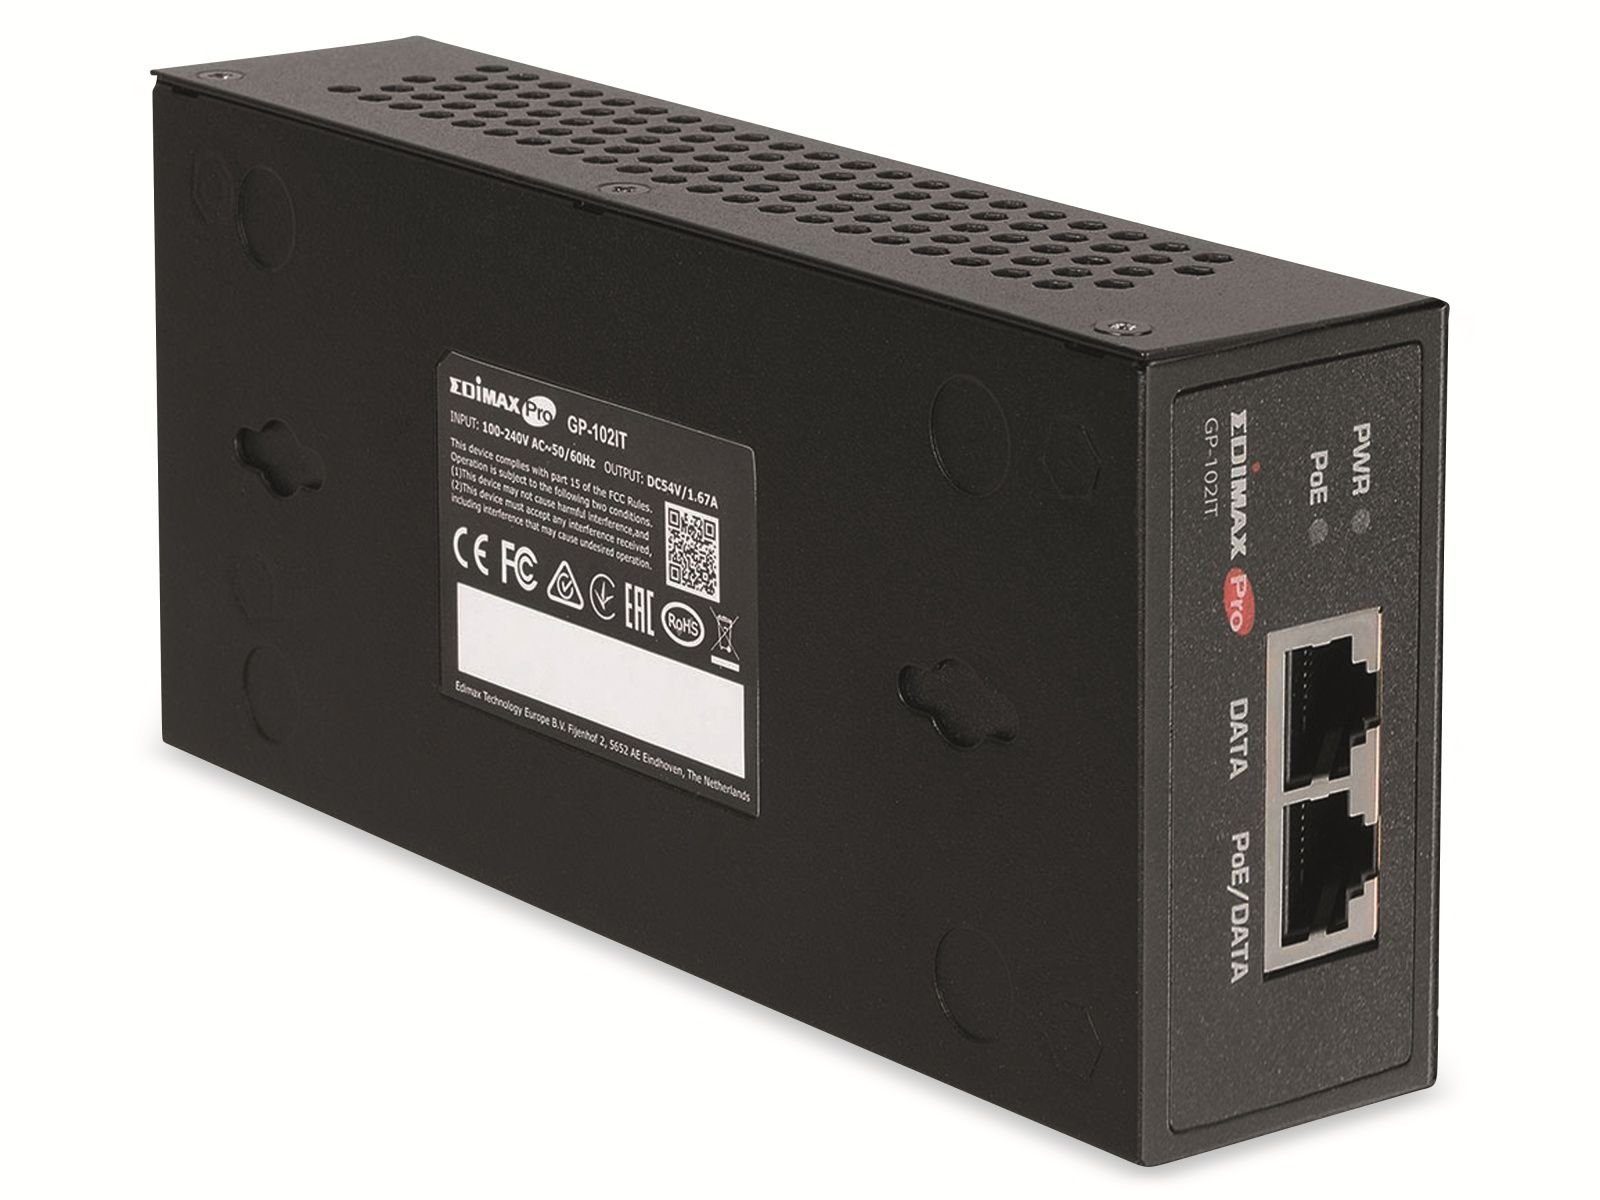 PoE++ IEEE 802.3bt, Netzwerk-Switch Edimax GP-102IT, 60W Injektor EDIMAX